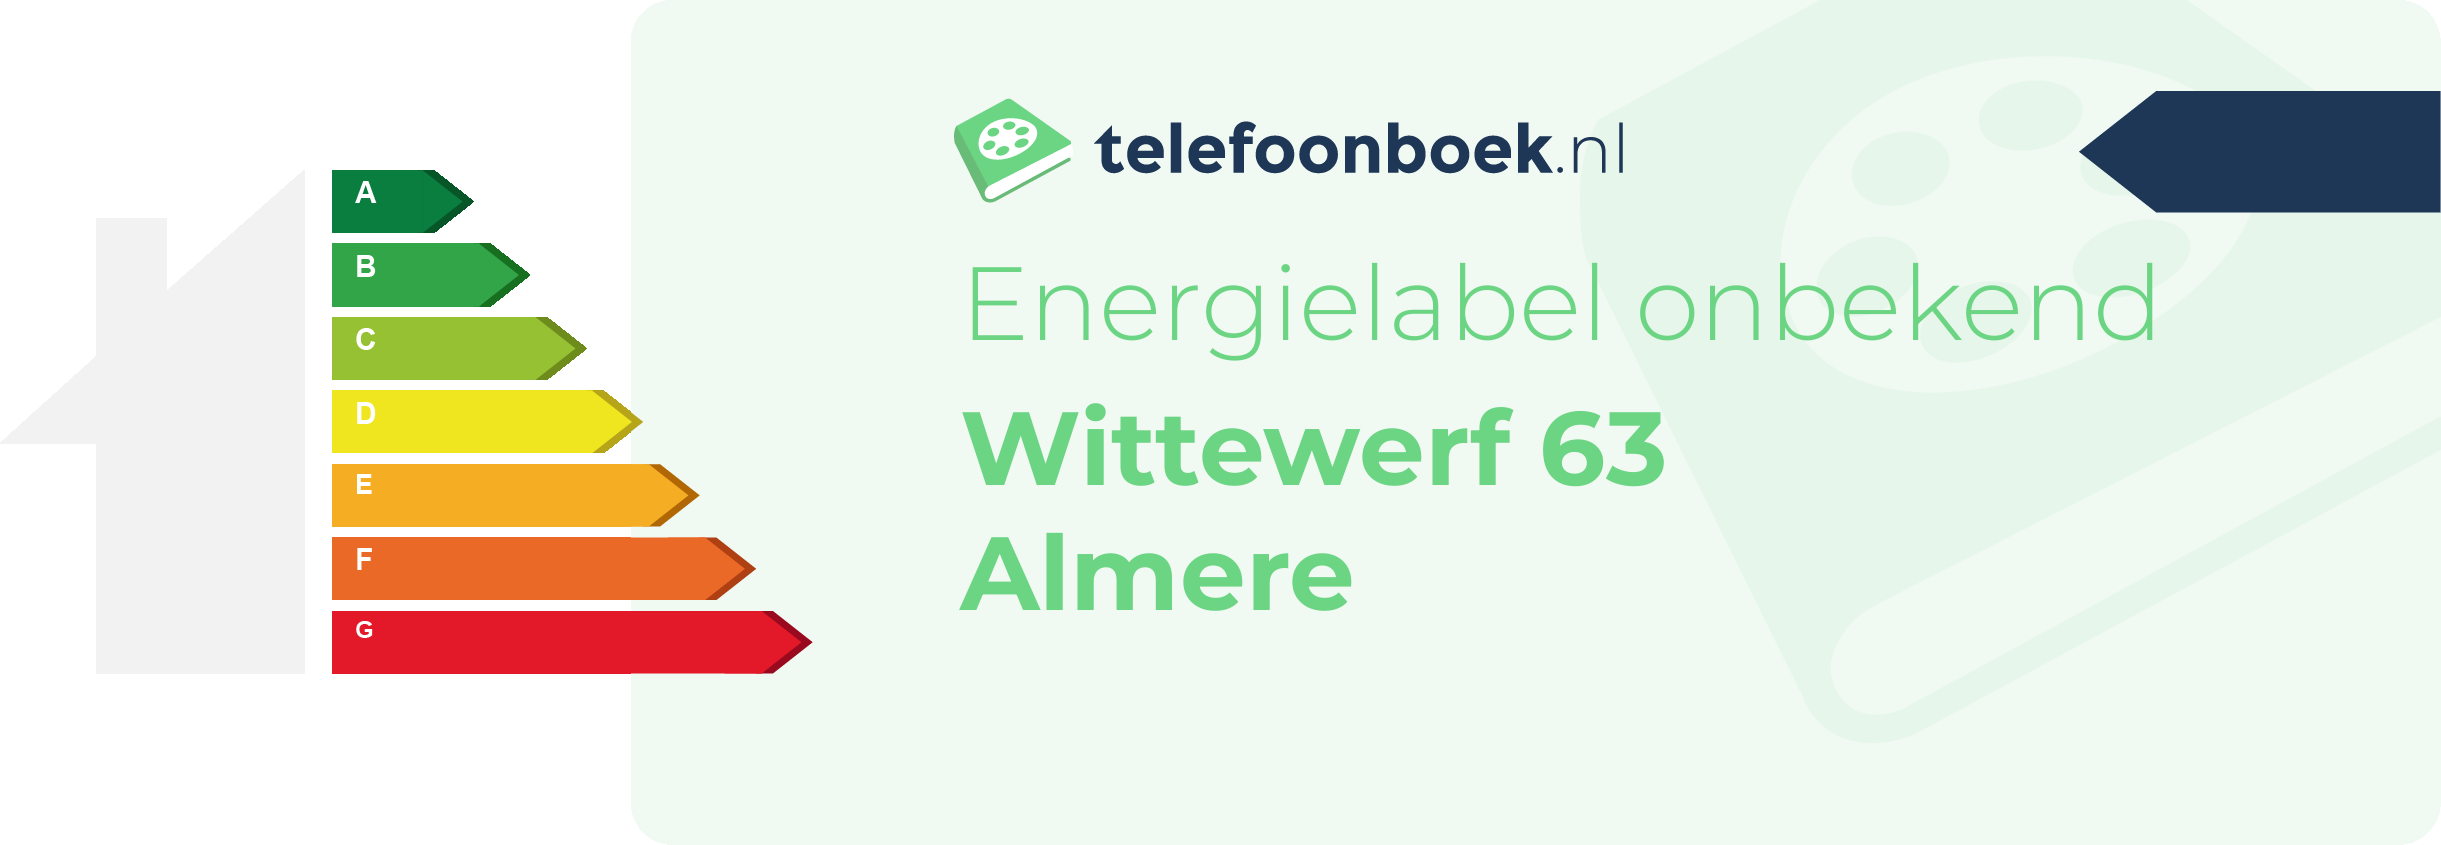 Energielabel Wittewerf 63 Almere